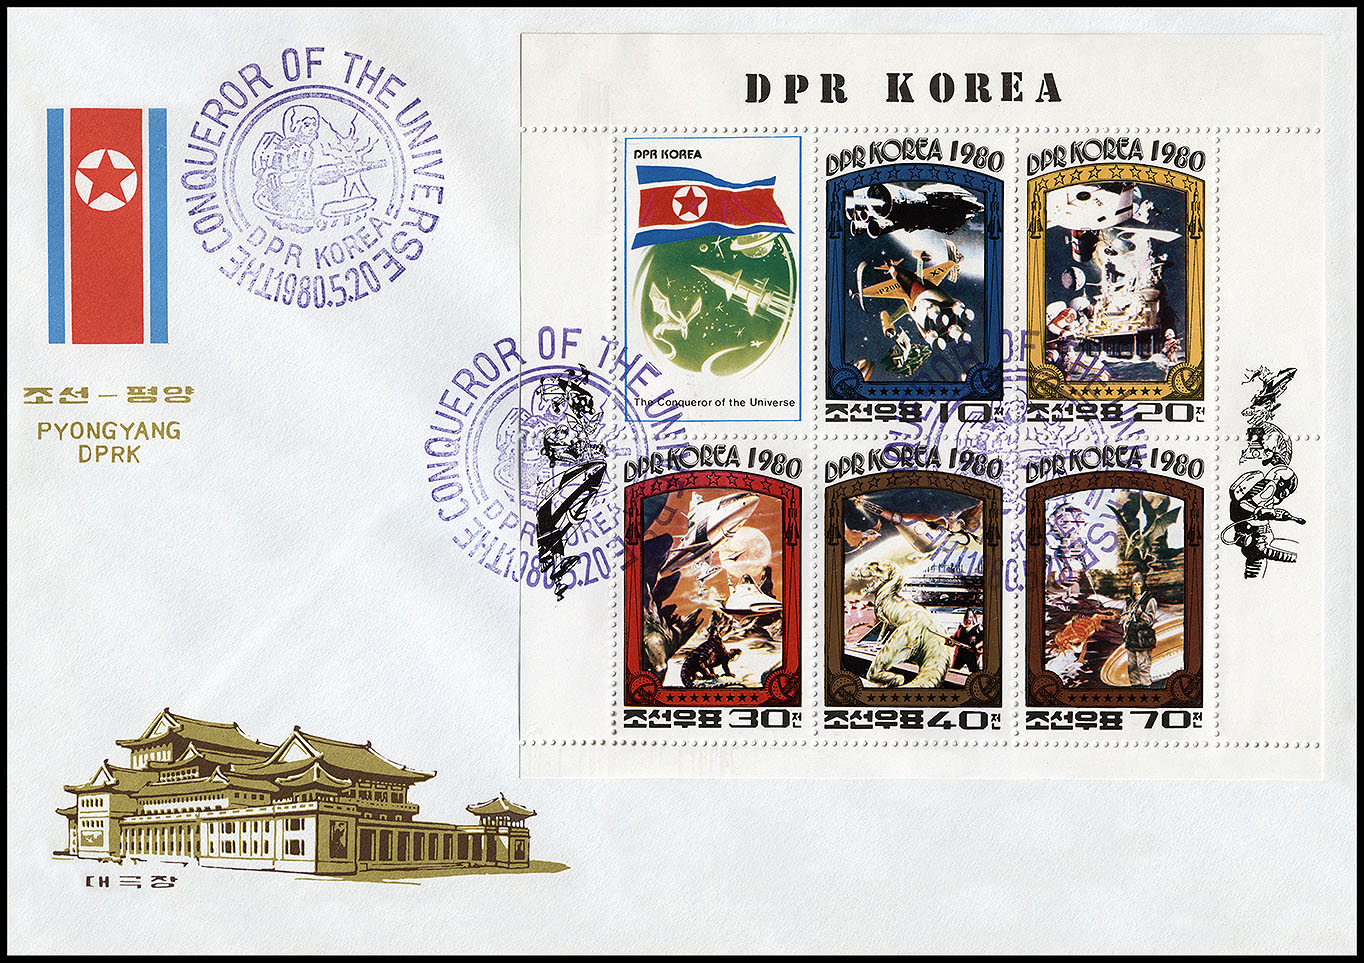 http://www.fandom.ru/about_fan/stamps/cover_korea_n_1980_fiction_mi_klb_2003a_2007a_fdc.jpg